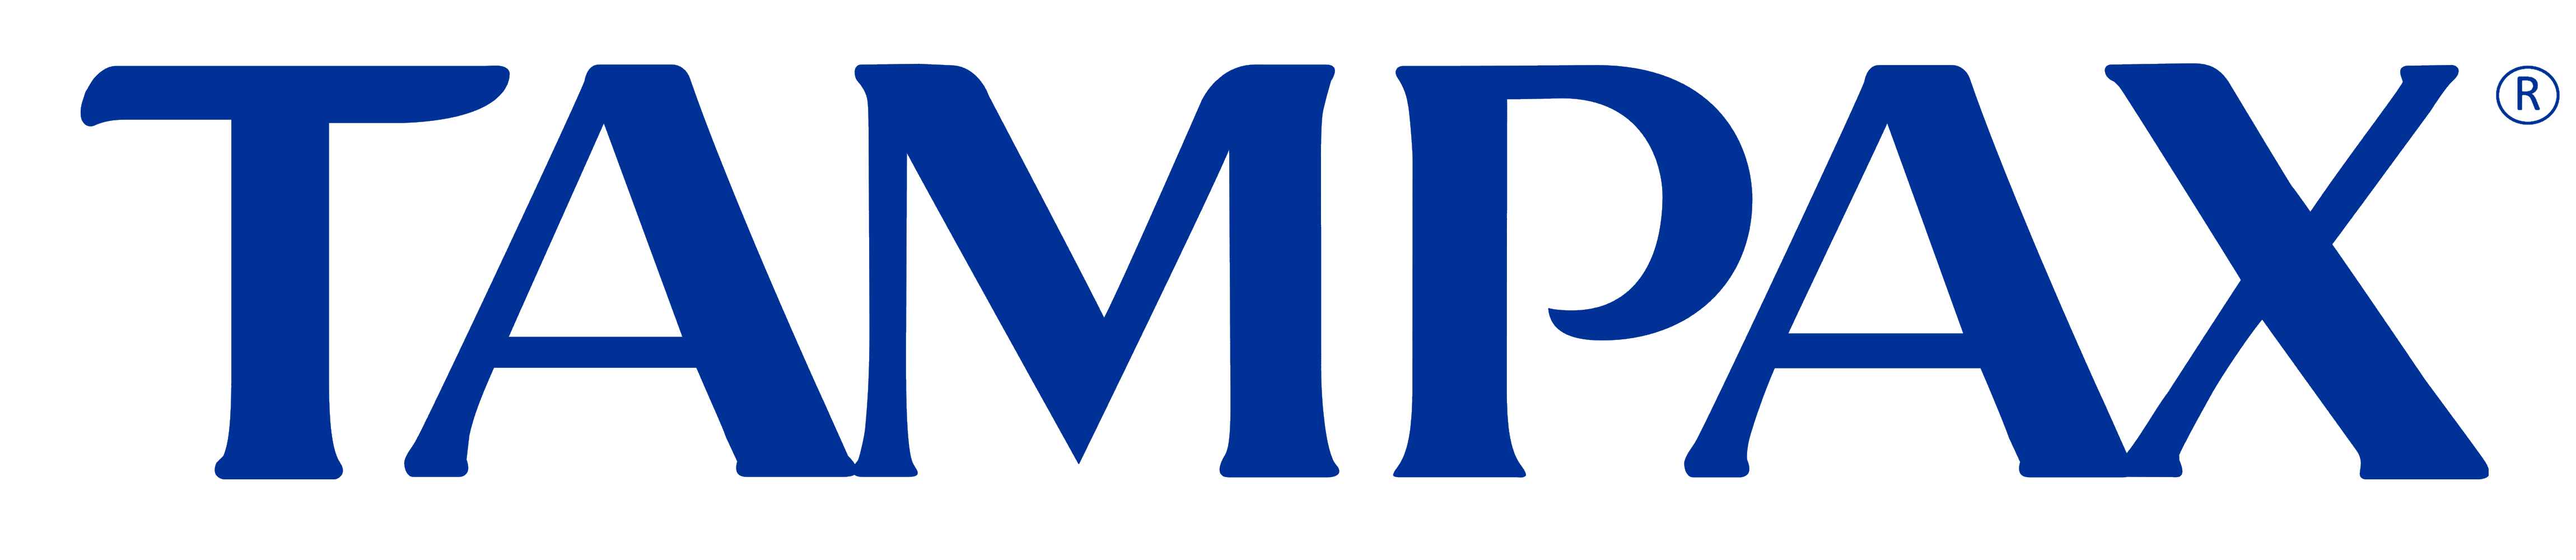 Tampax logo, logotype